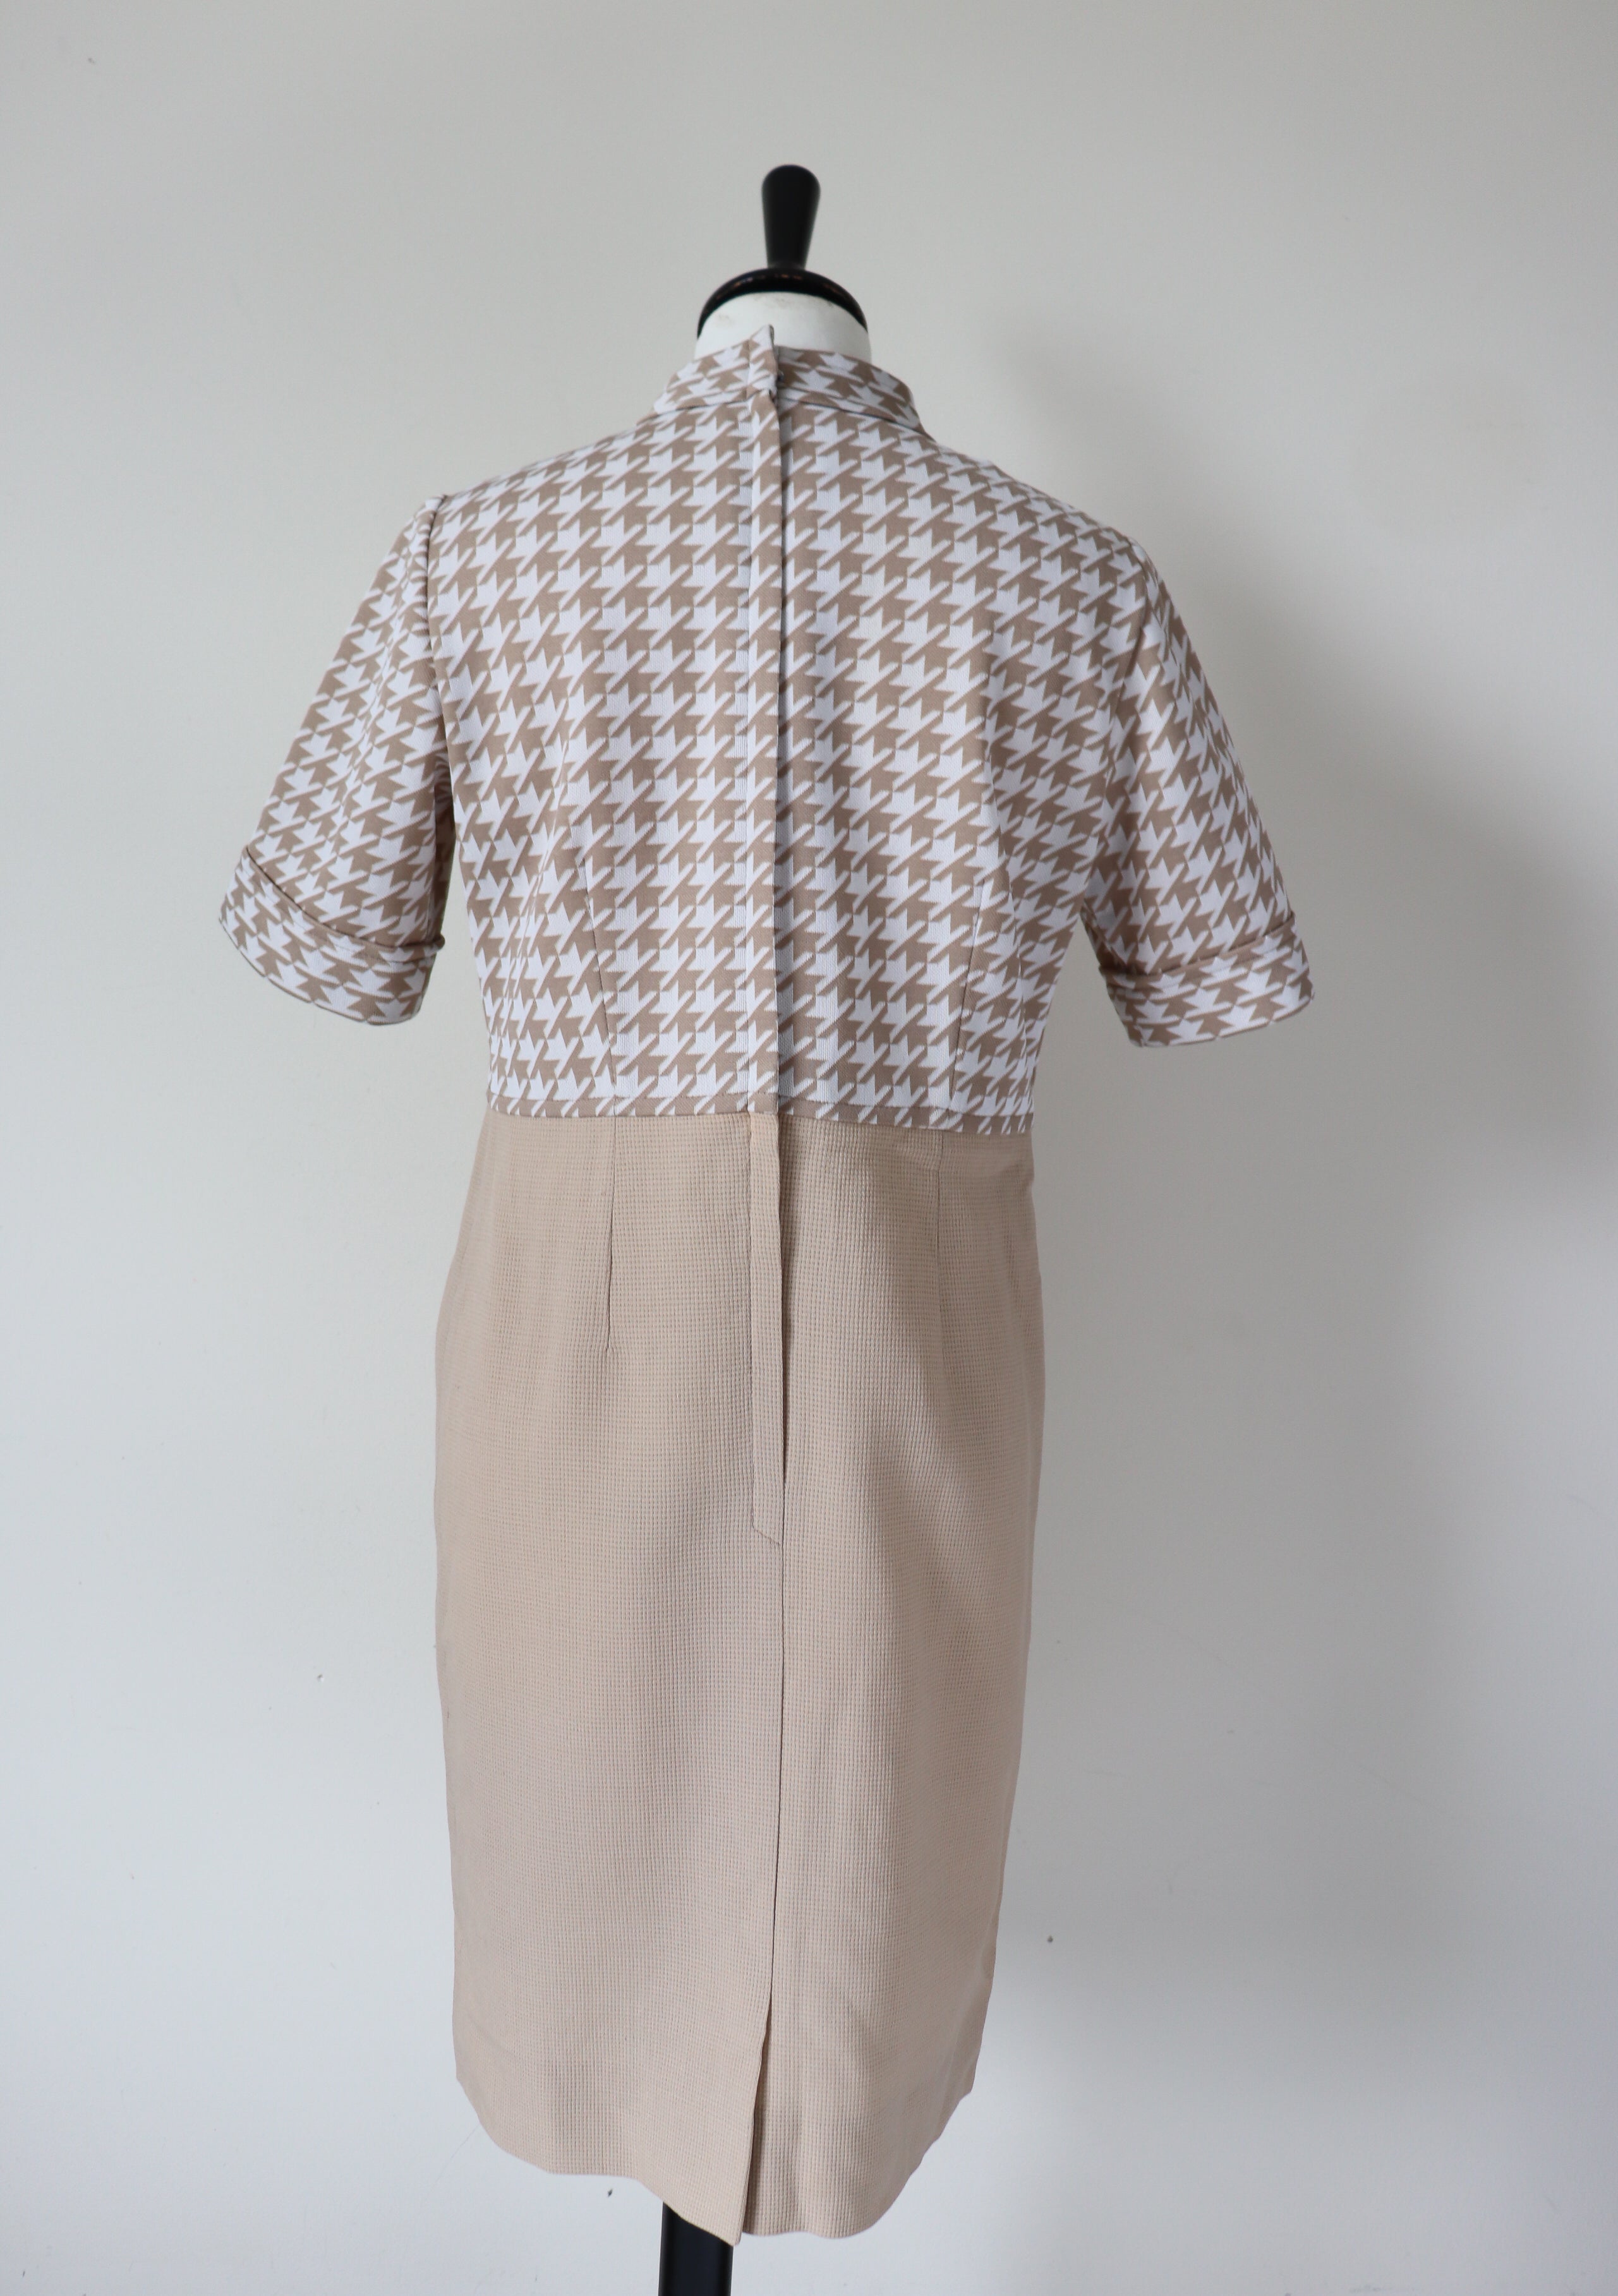 1960s Vintage Shift Dress - Cream / Beige Houndstooth Check - Empire Waist -  M / UK 12